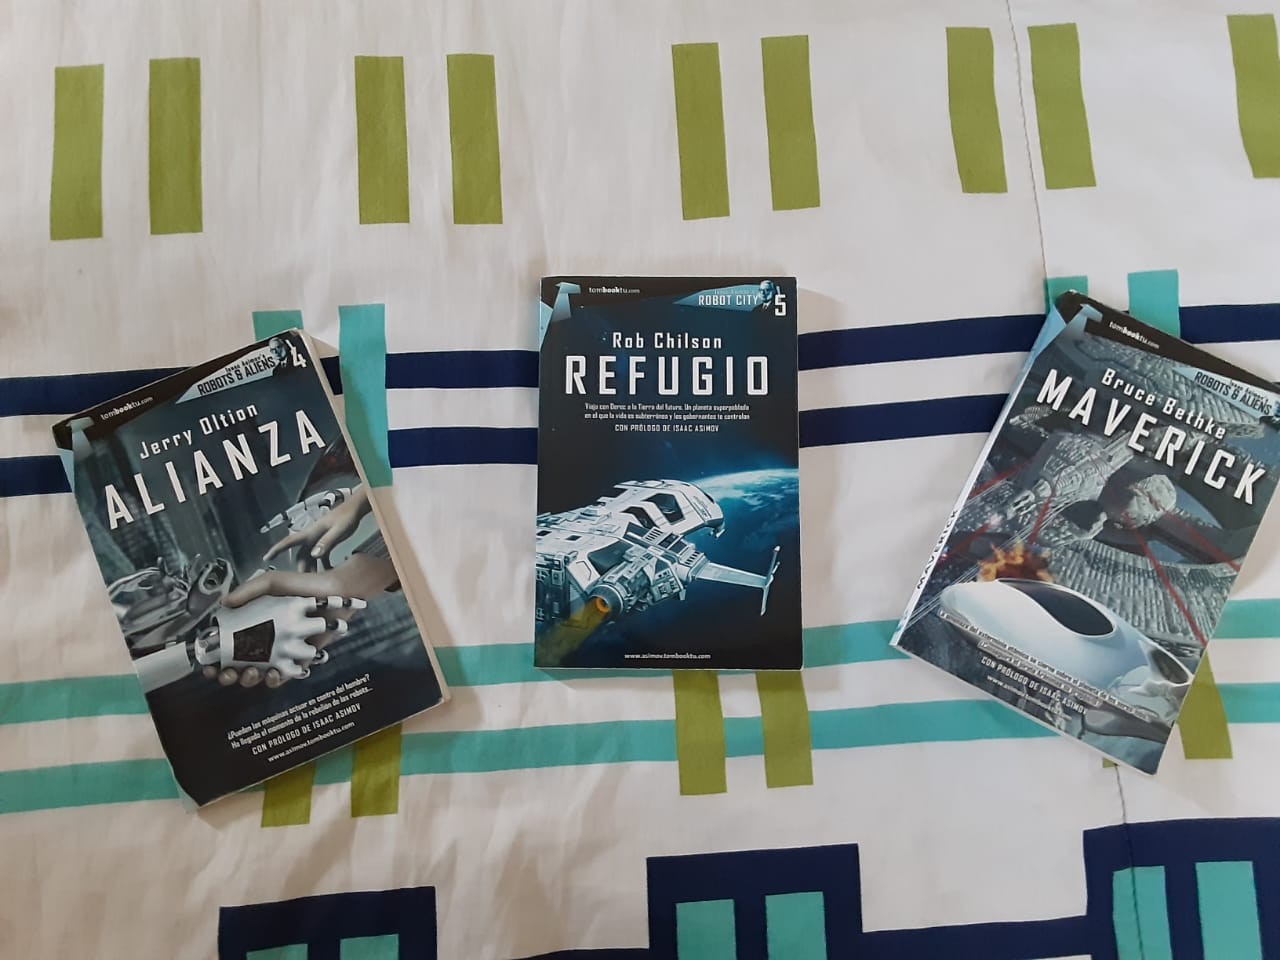 libros y revistas - 3 libros de ciencia ficción (Alianza, Refugio y Maverick).